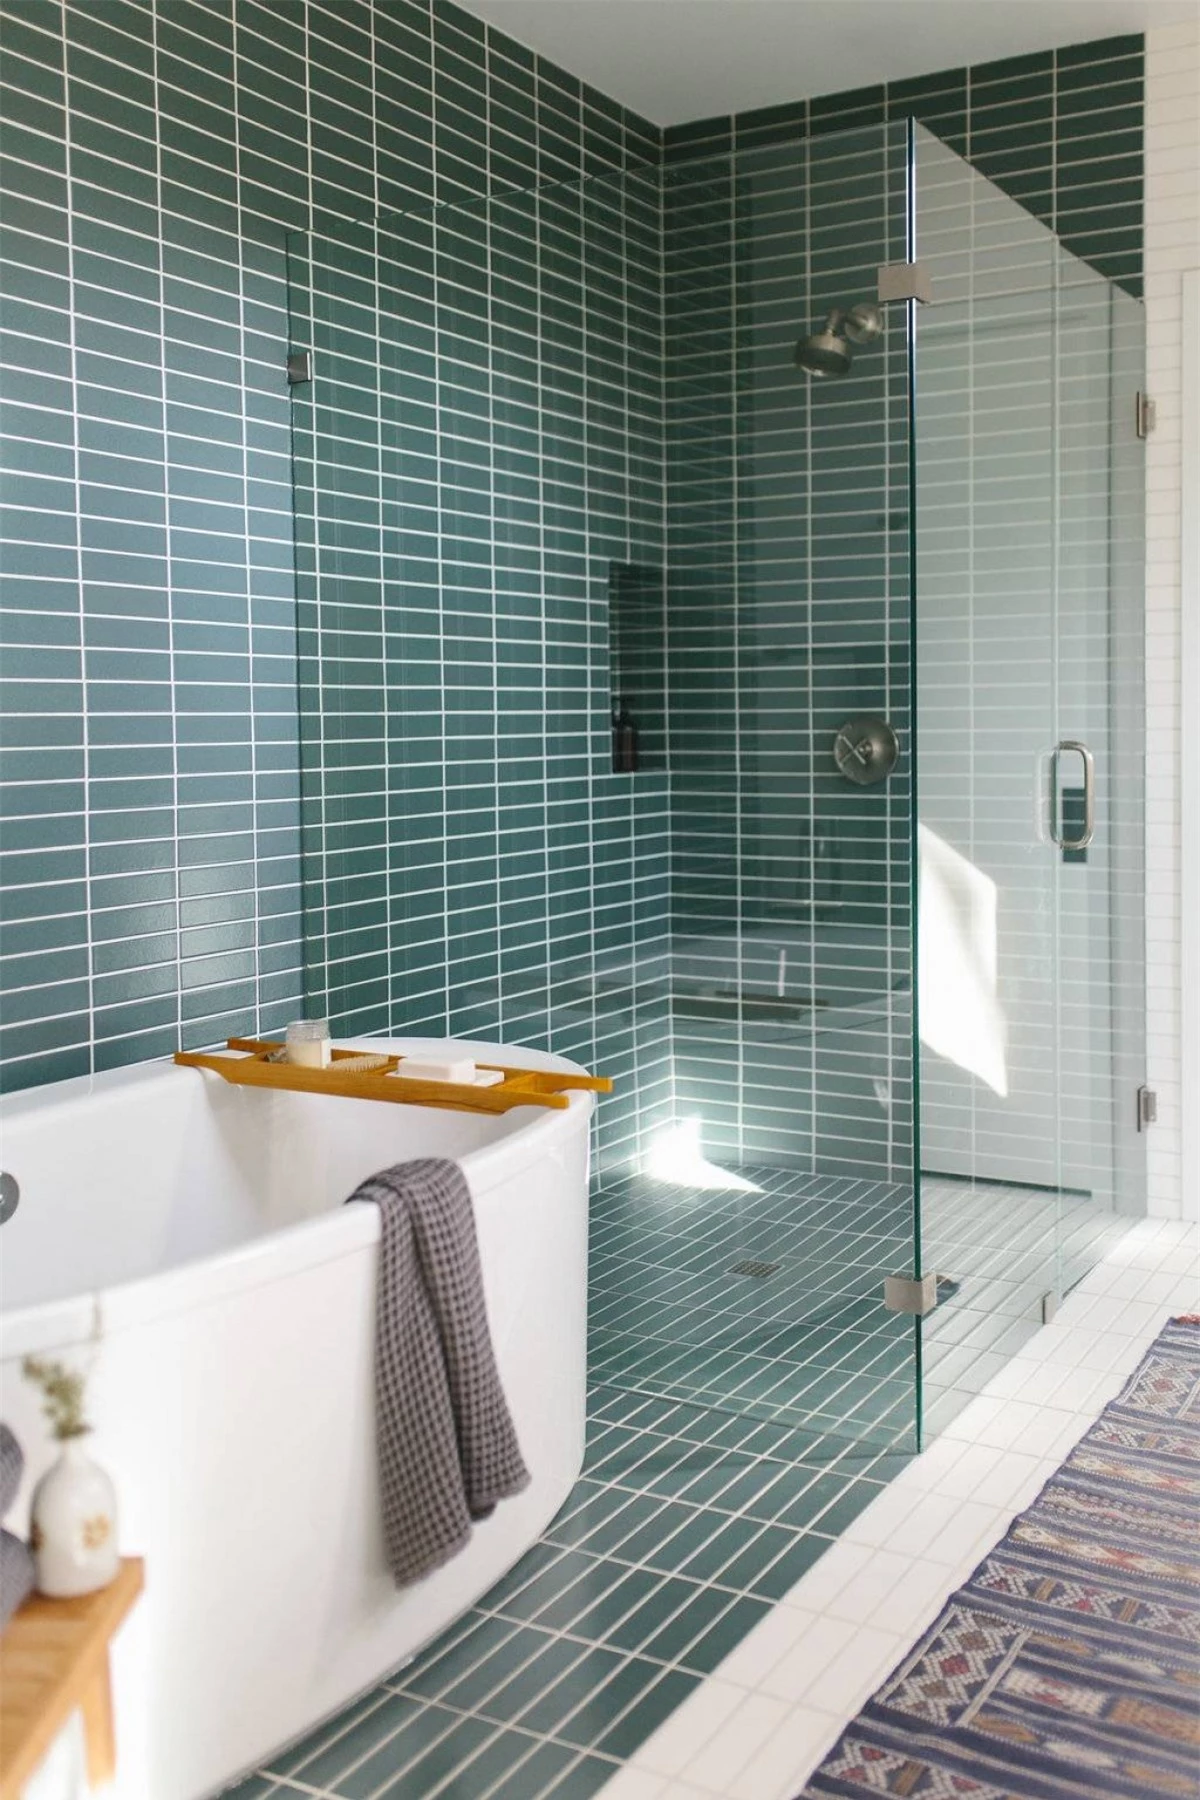 Không may căn phòng tắm nhà bạn có diện tích eo hẹp một chút thì đừng ngần ngại sử dụng vách kính, điều này sẽ tạo ảo giác căn phòng được rộng lớn hơn.